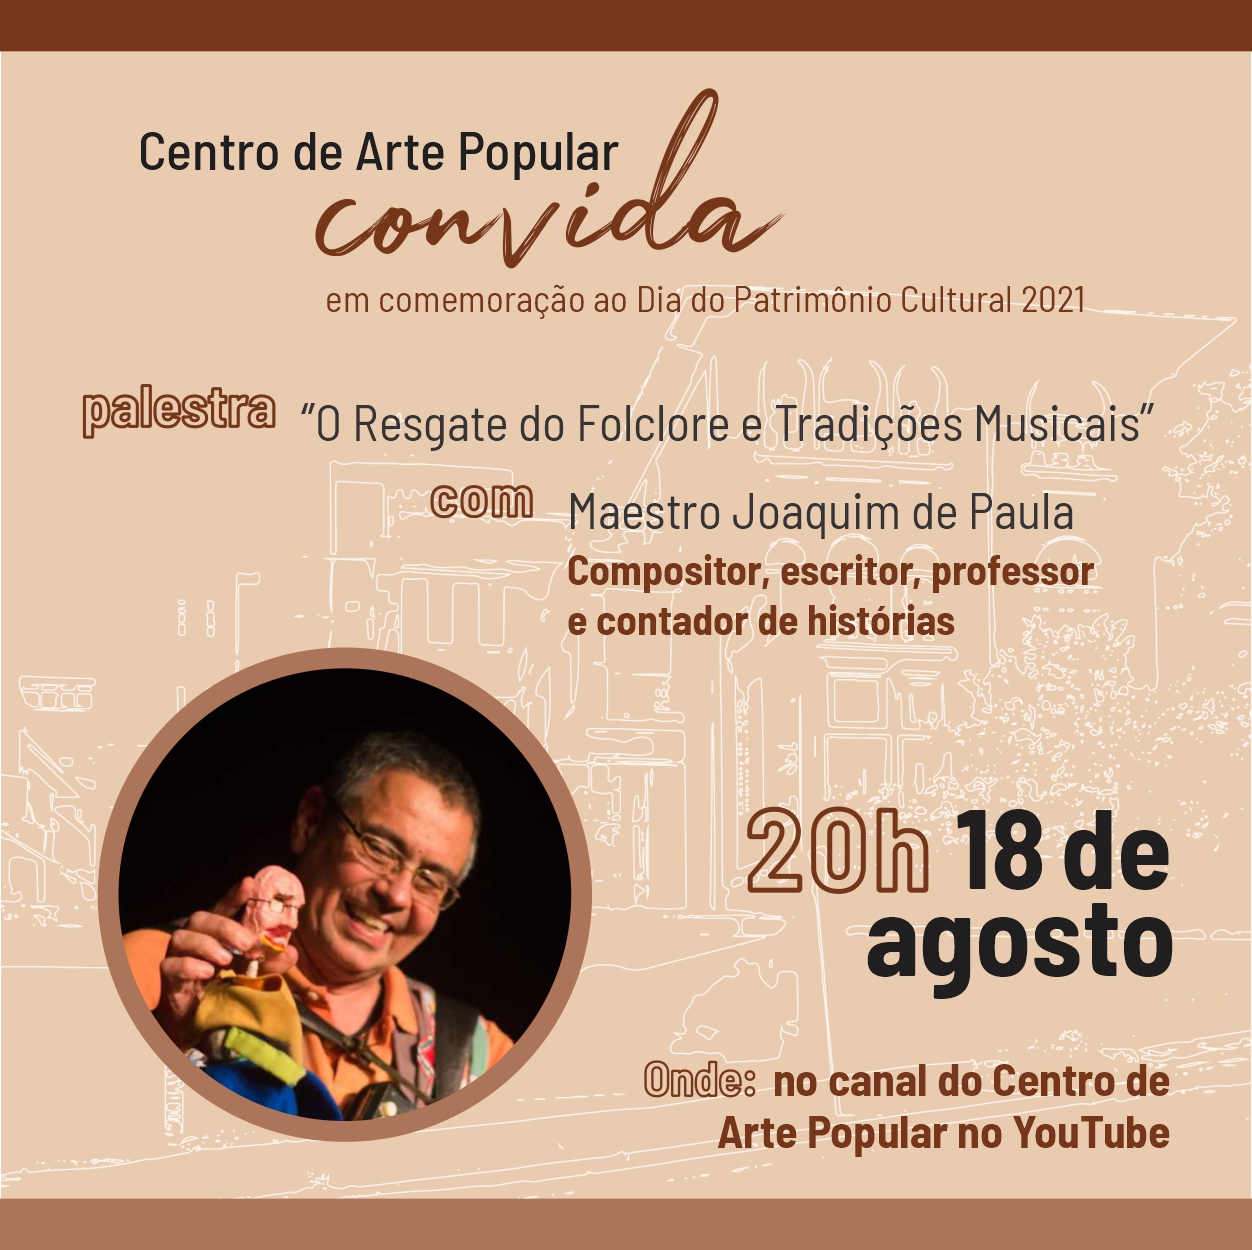 Centro de Arte Popular promove live com maestro Joaquim de Paula